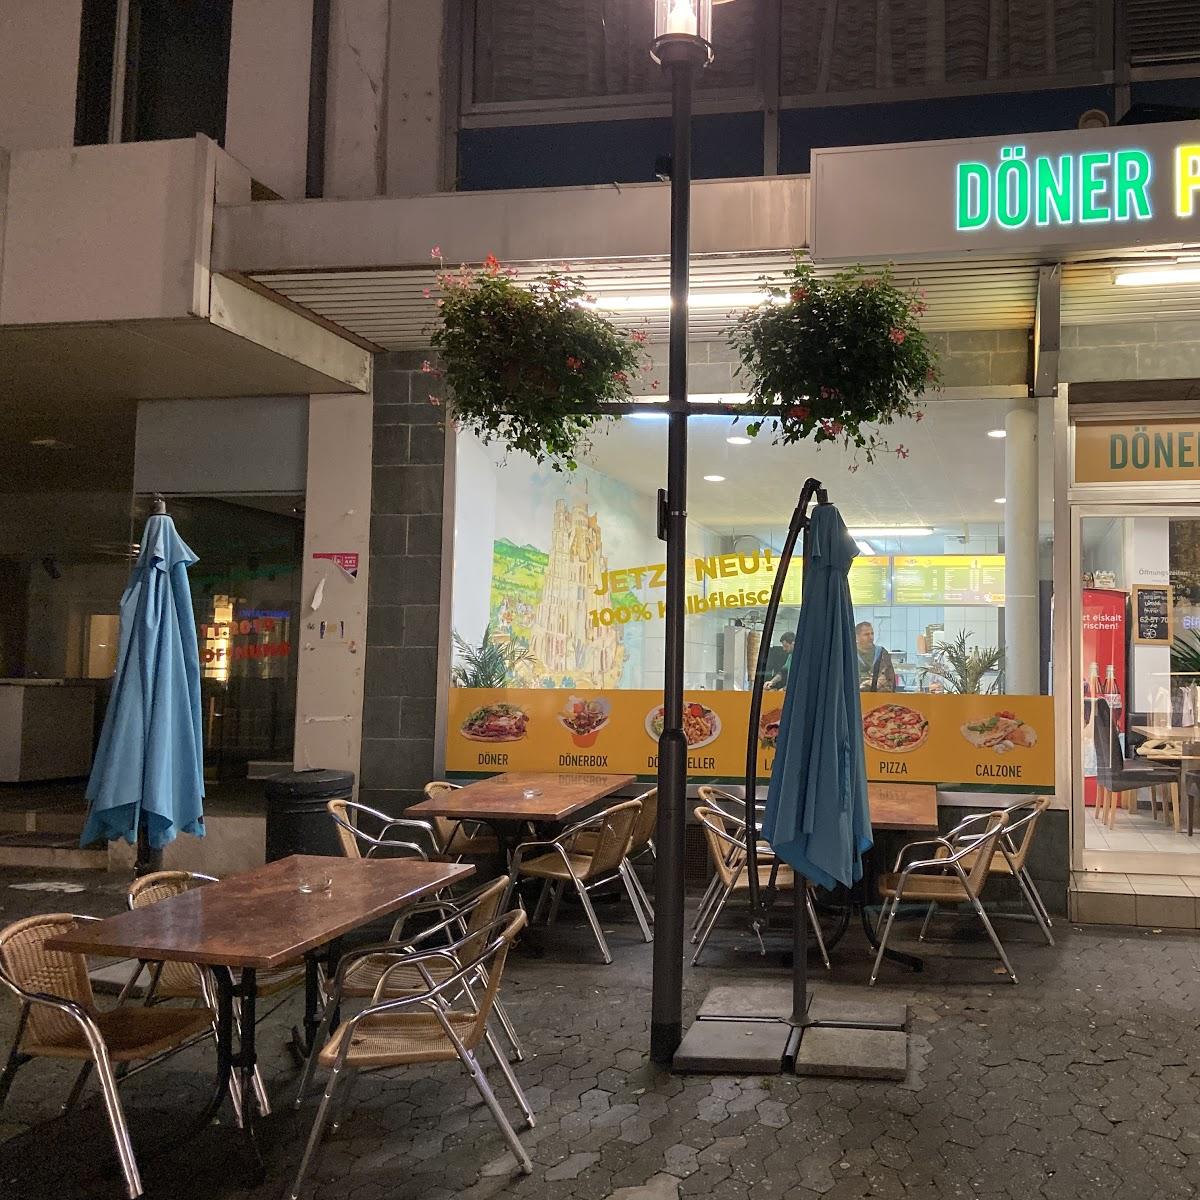 Restaurant "Döner Point" in Bensheim